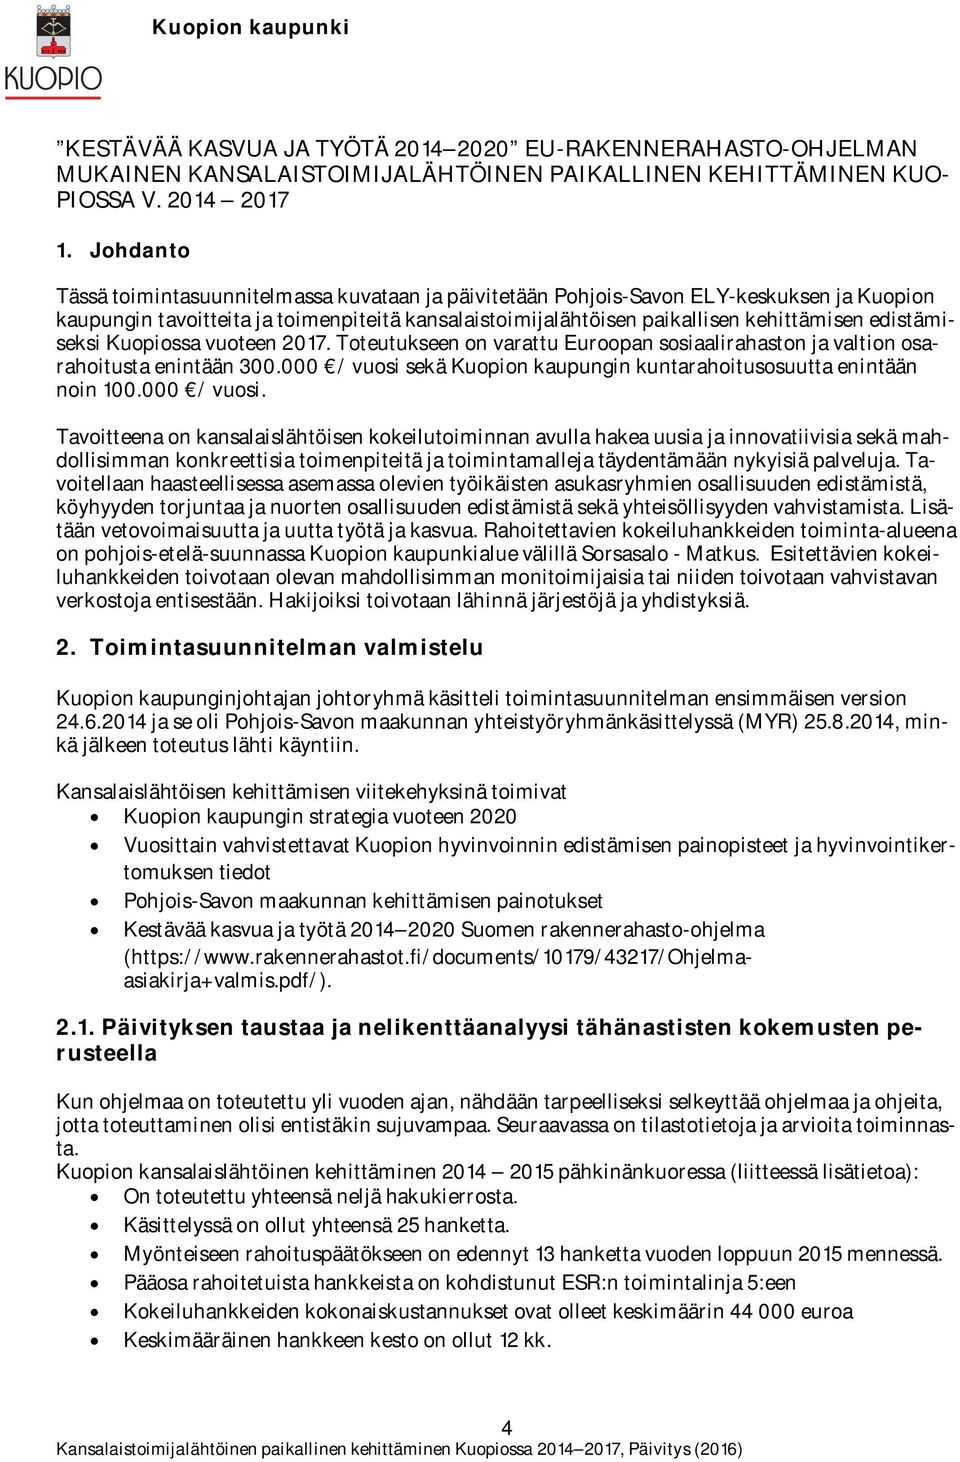 edistämiseksi Kuopiossa vuoteen 2017. Toteutukseen on varattu Euroopan sosiaalirahaston ja valtion osarahoitusta enintään 300.000 / vuosi sekä Kuopion kaupungin kuntarahoitusosuutta enintään noin 100.